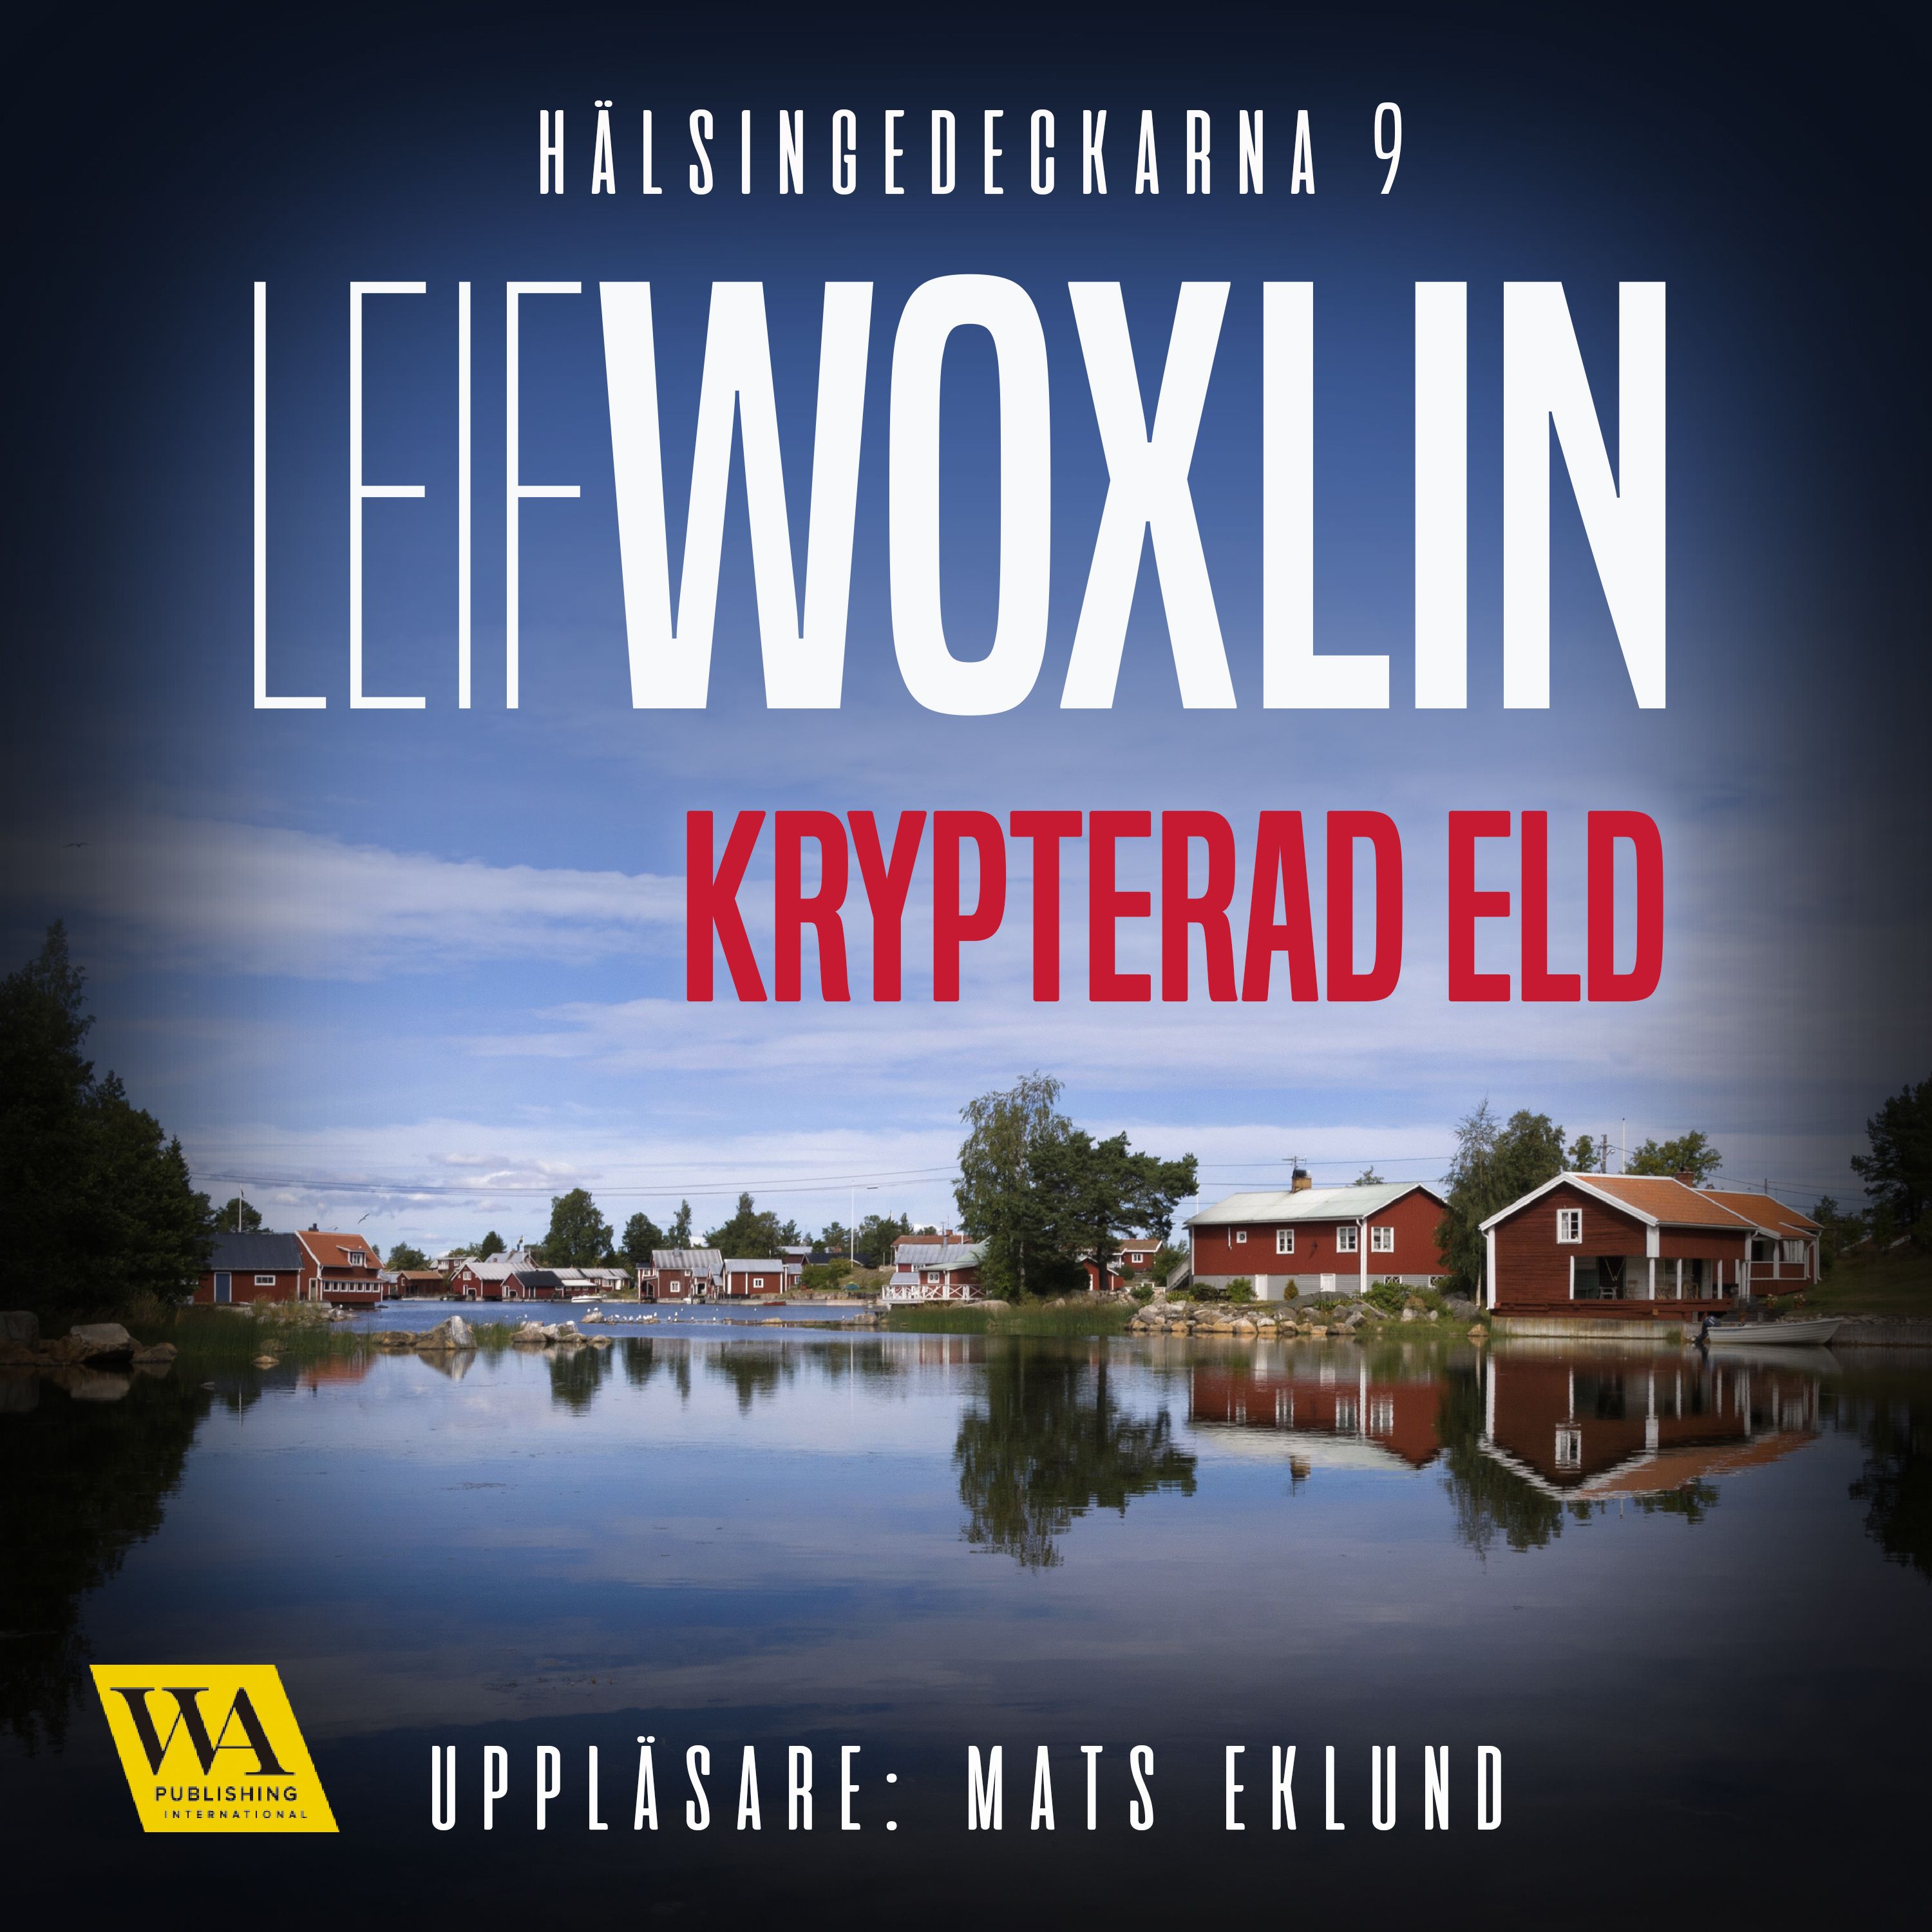 Krypterad eld, ljudbok av Leif Woxlin